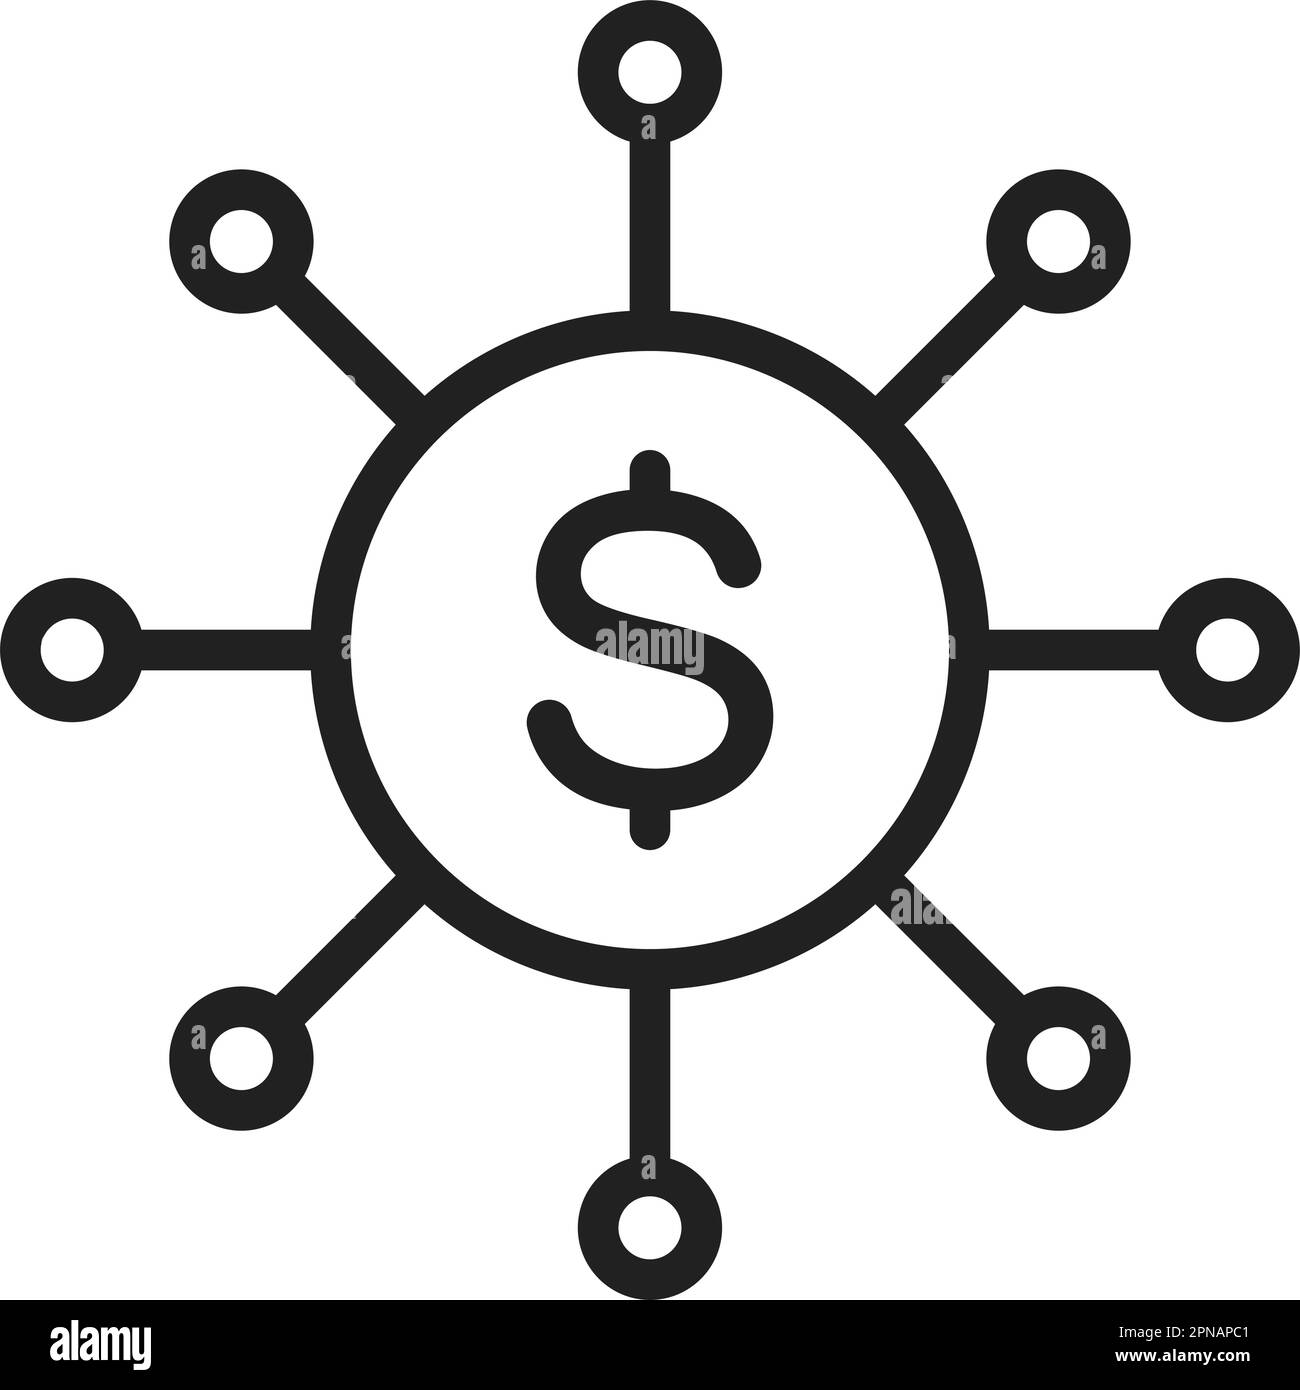 Vektorbild des Symbols "Barmittelverteilung". Geeignet für mobile Apps, Web-Apps und Printmedien. Stock Vektor